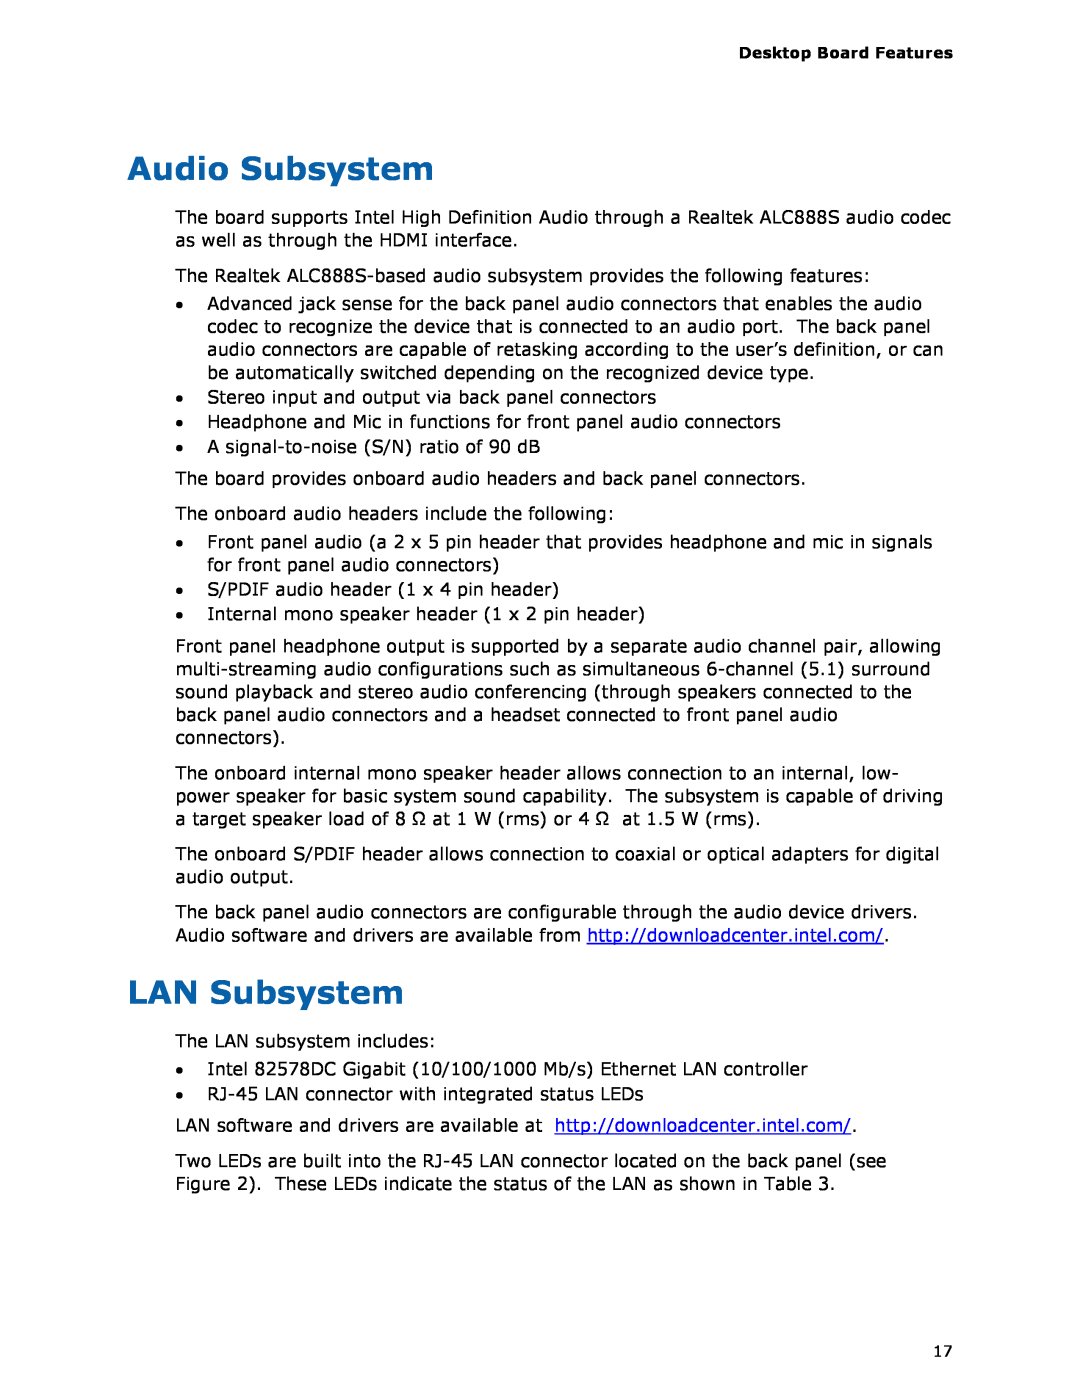 Intel BOXDH55HC manual Audio Subsystem, LAN Subsystem 